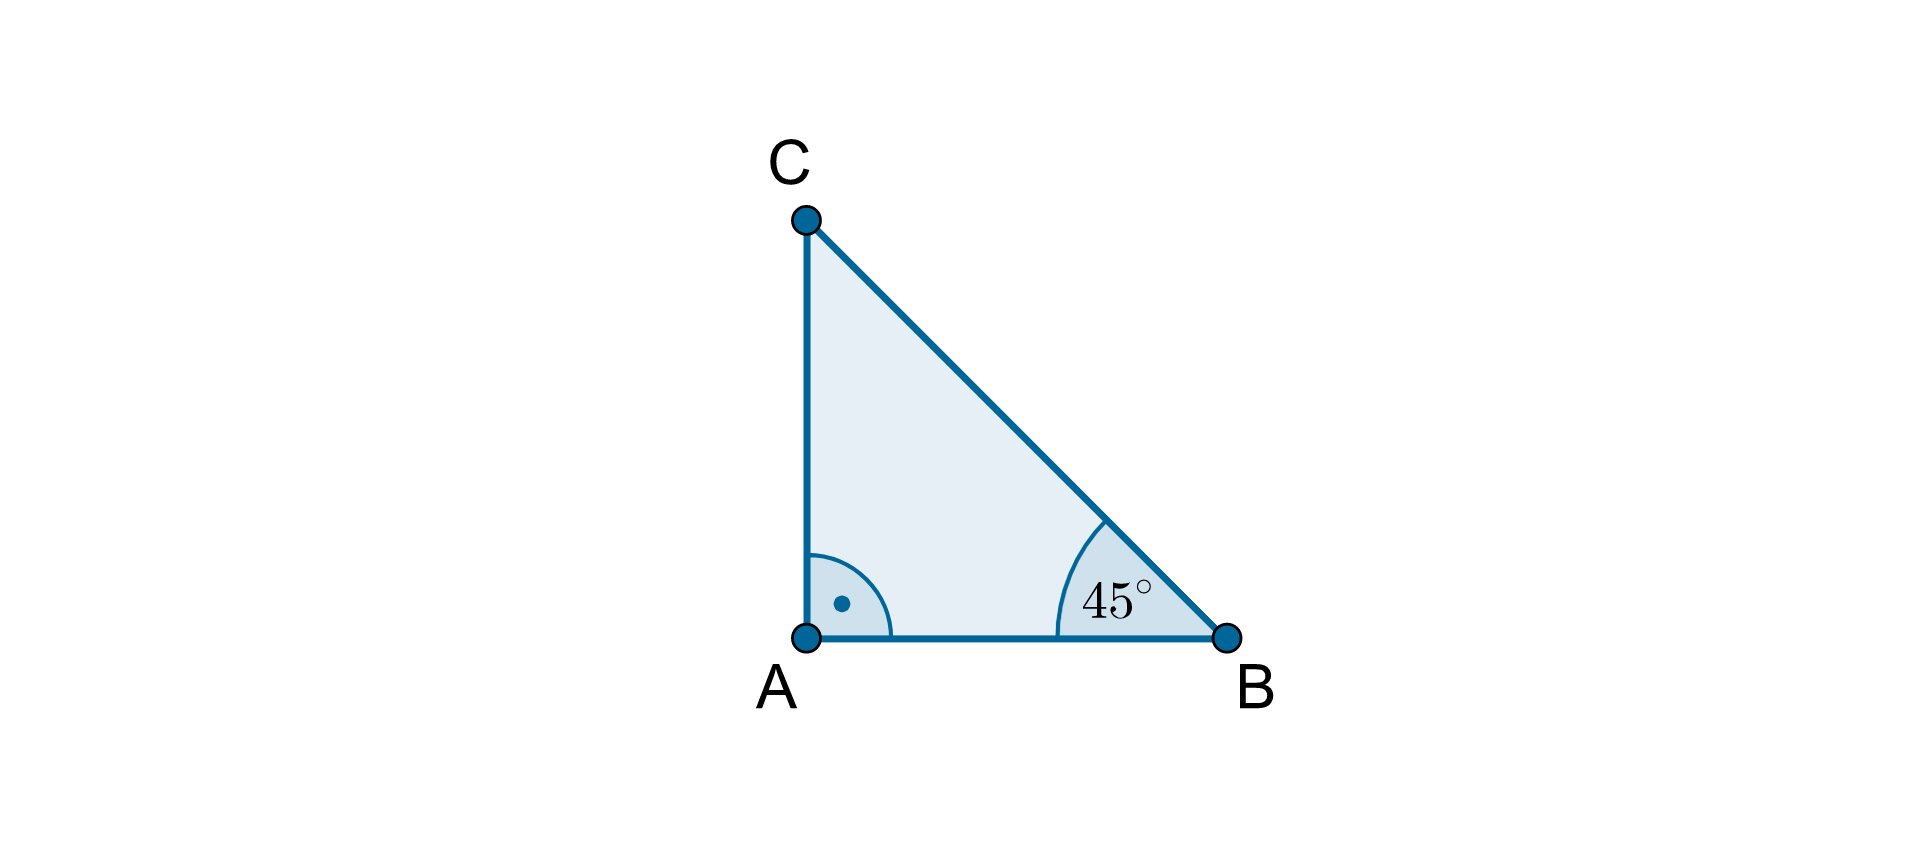 Ilustracja przedstawia trójkąt prostokątny A B C, w którym kąt prosty znajduje się przy wierzchołku A. Boki A B i A C są przyprostokątnymi, a bok B C jest przeciwprostokątną tego trójkąta. Kąt A B C ma miarę 45 stopni.